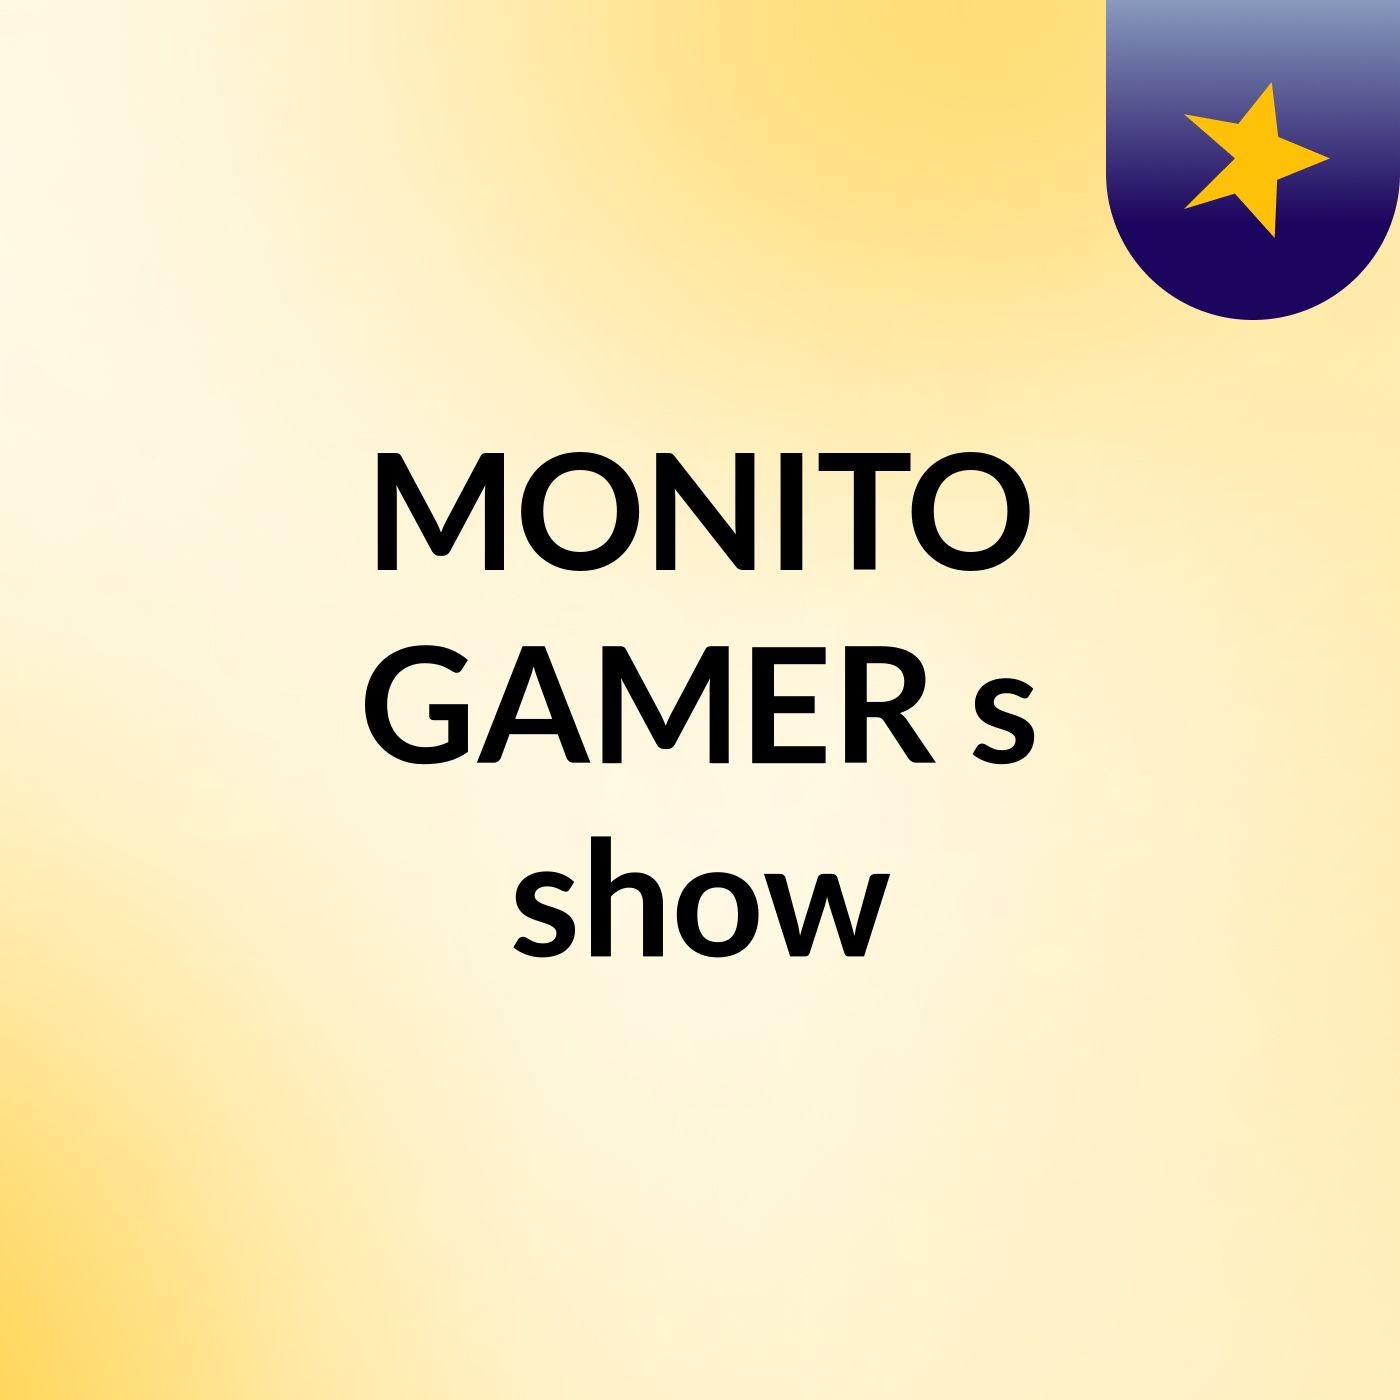 MONITO GAMER's show